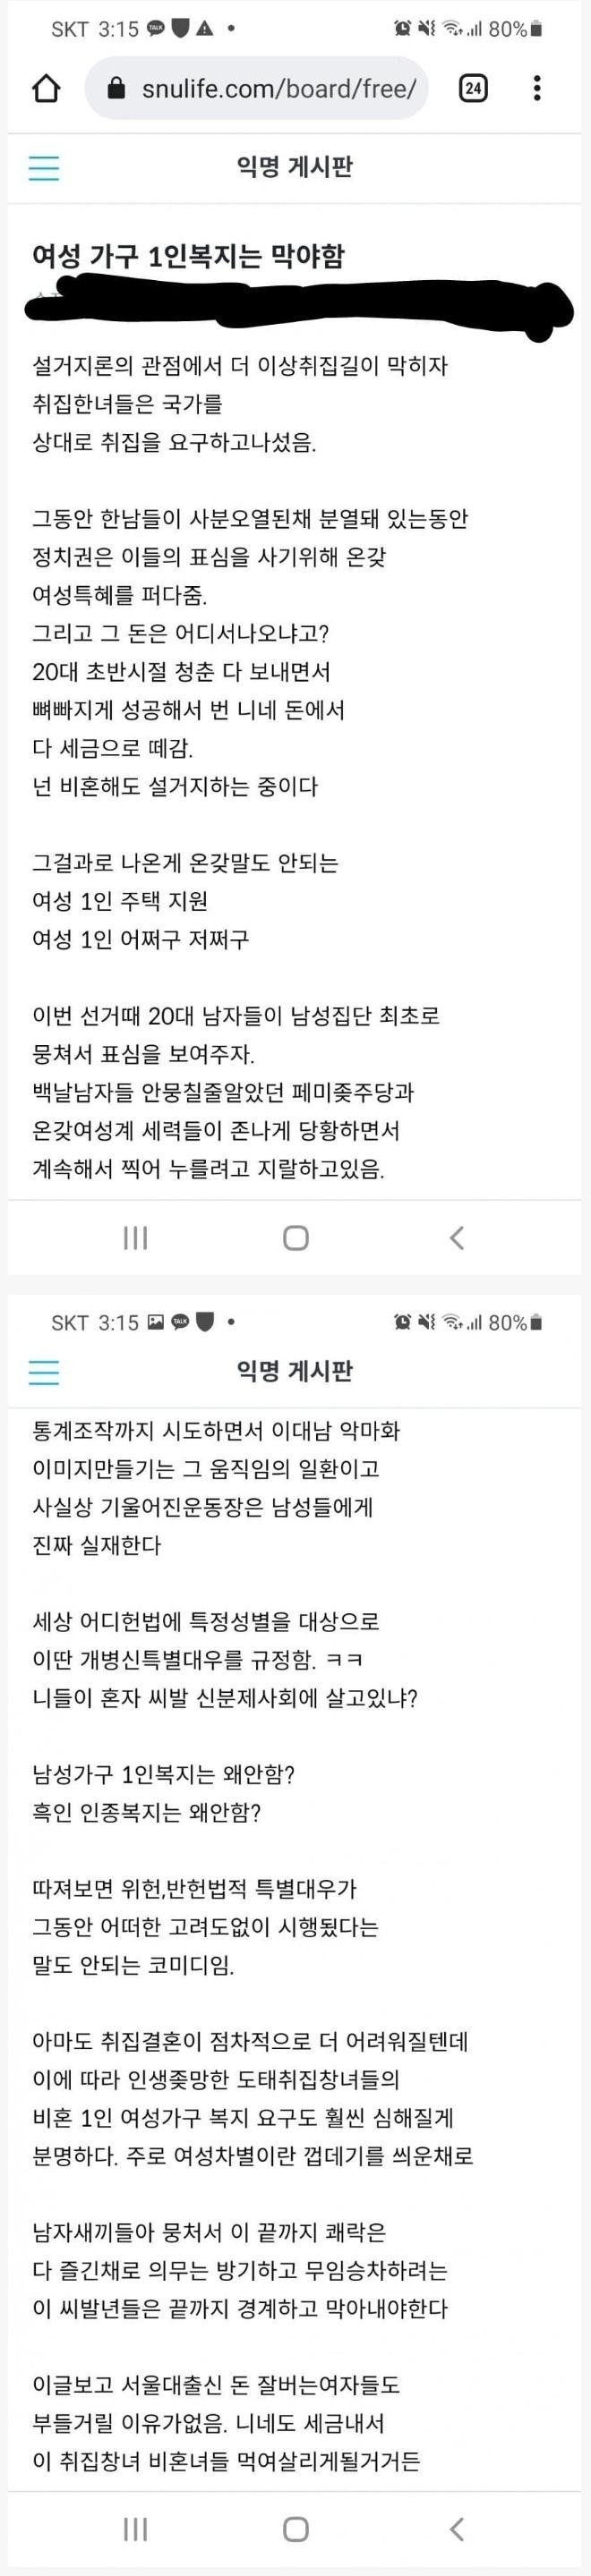 서울대생 커뮤니티 익명게시판 인기글 수준